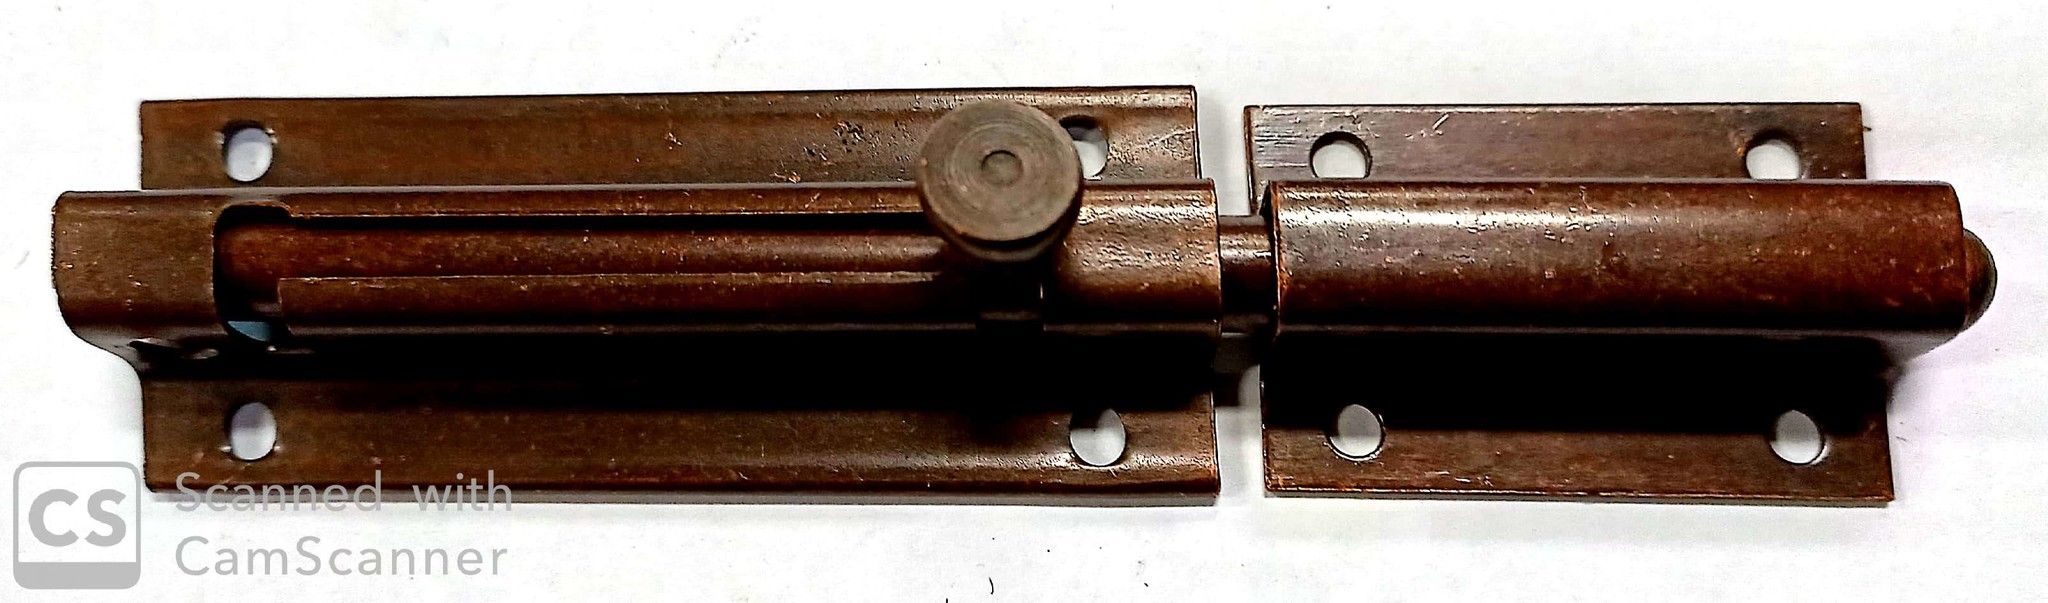 Catenaccio tondo mm 150 con portalucchetto in acciaio bronzato